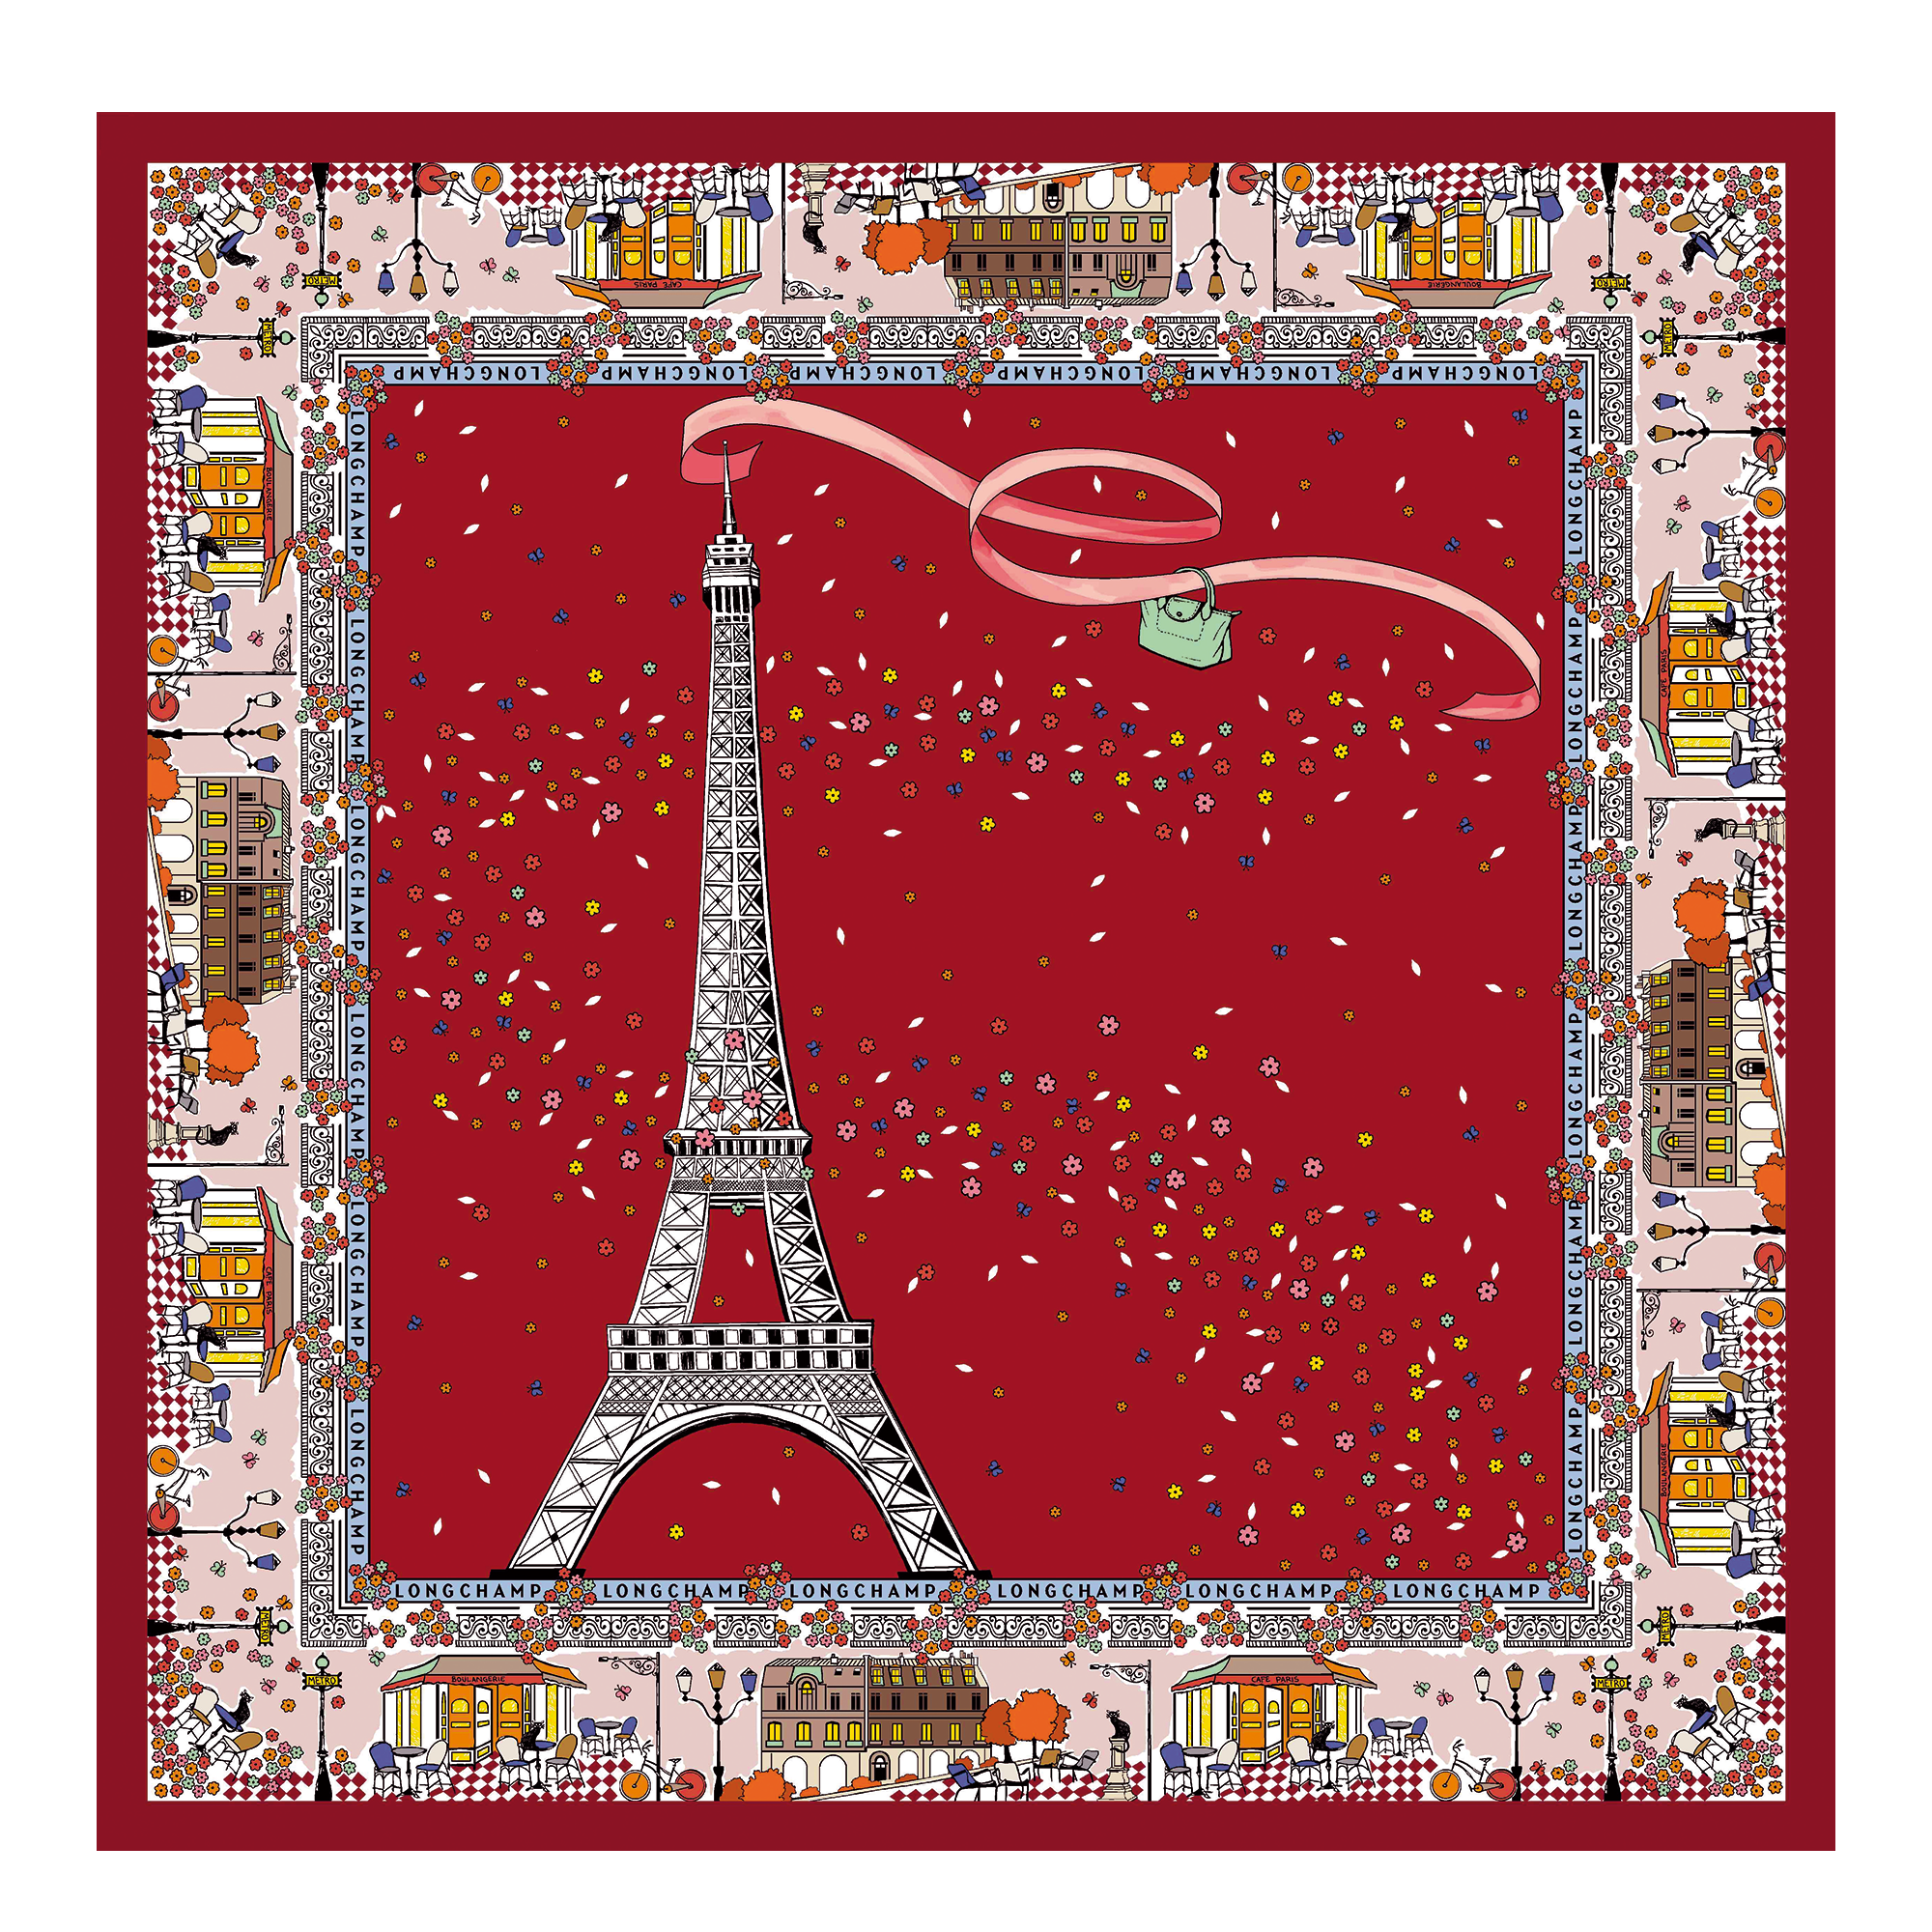 Le Pliage 在巴黎 絲質圍巾, 番茄紅